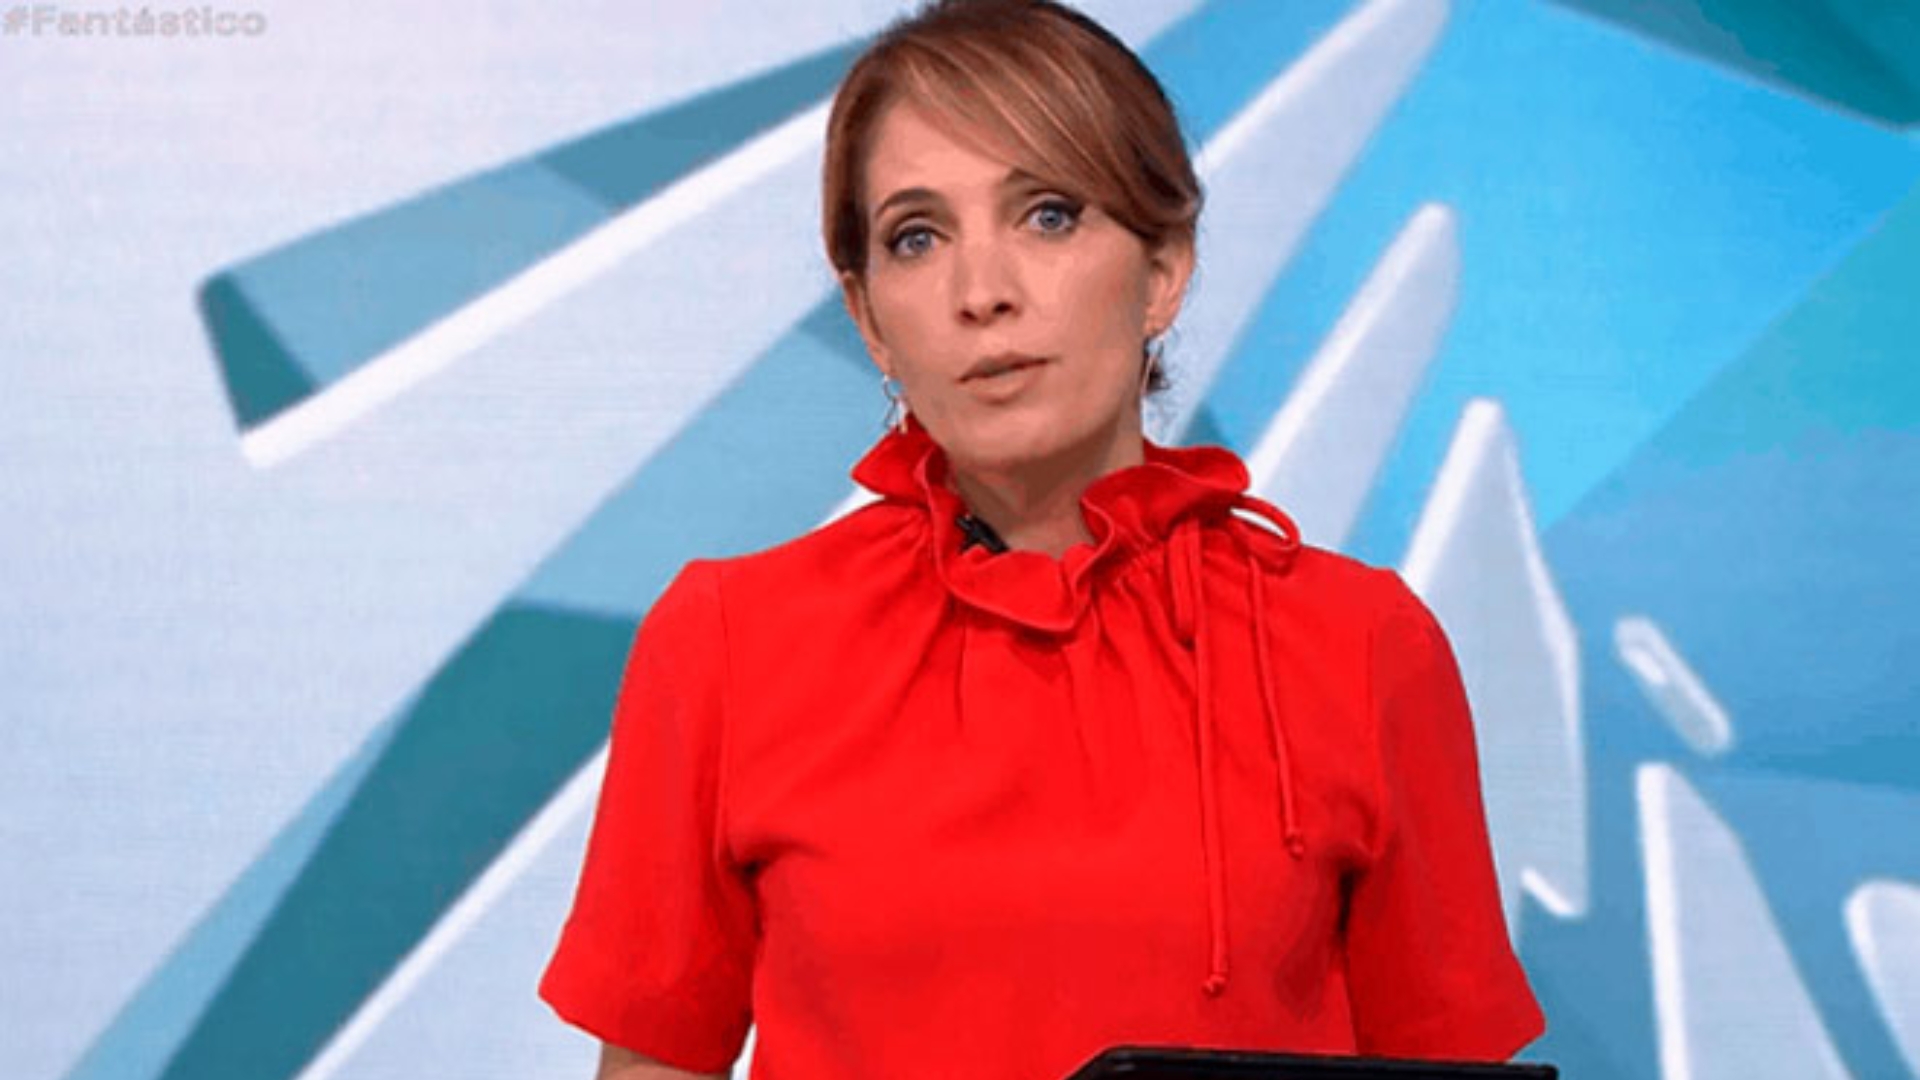 Poliana Abritta apresenta o Fantástico, que apresentou reportagem que rendeu processo contra a Globo por transfobia